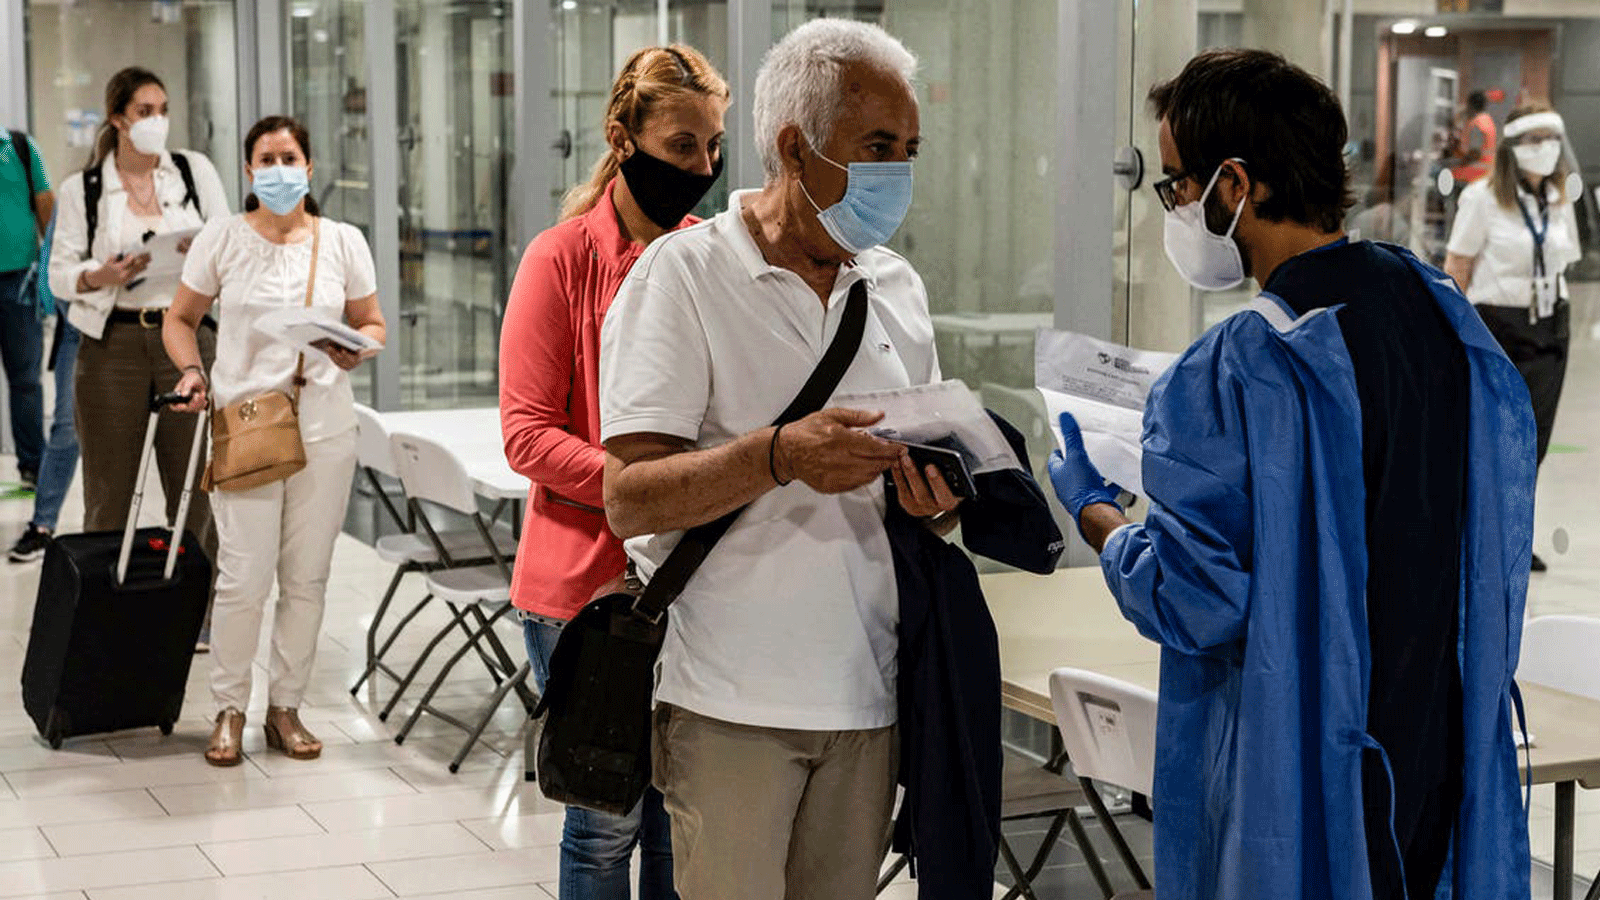 المسعفون يتحققون من وثائق المسافرين مرتدين الأقنعة الذين يصلون إلى مطار لارنكا الدولي في قبرص في 9 حزيران/ يونيو 2020، قبل أن يتم فحصهم بحثًا عن أعراض COVID-19 وهم في طريقهم إلى مراقبة جوازات السفر.